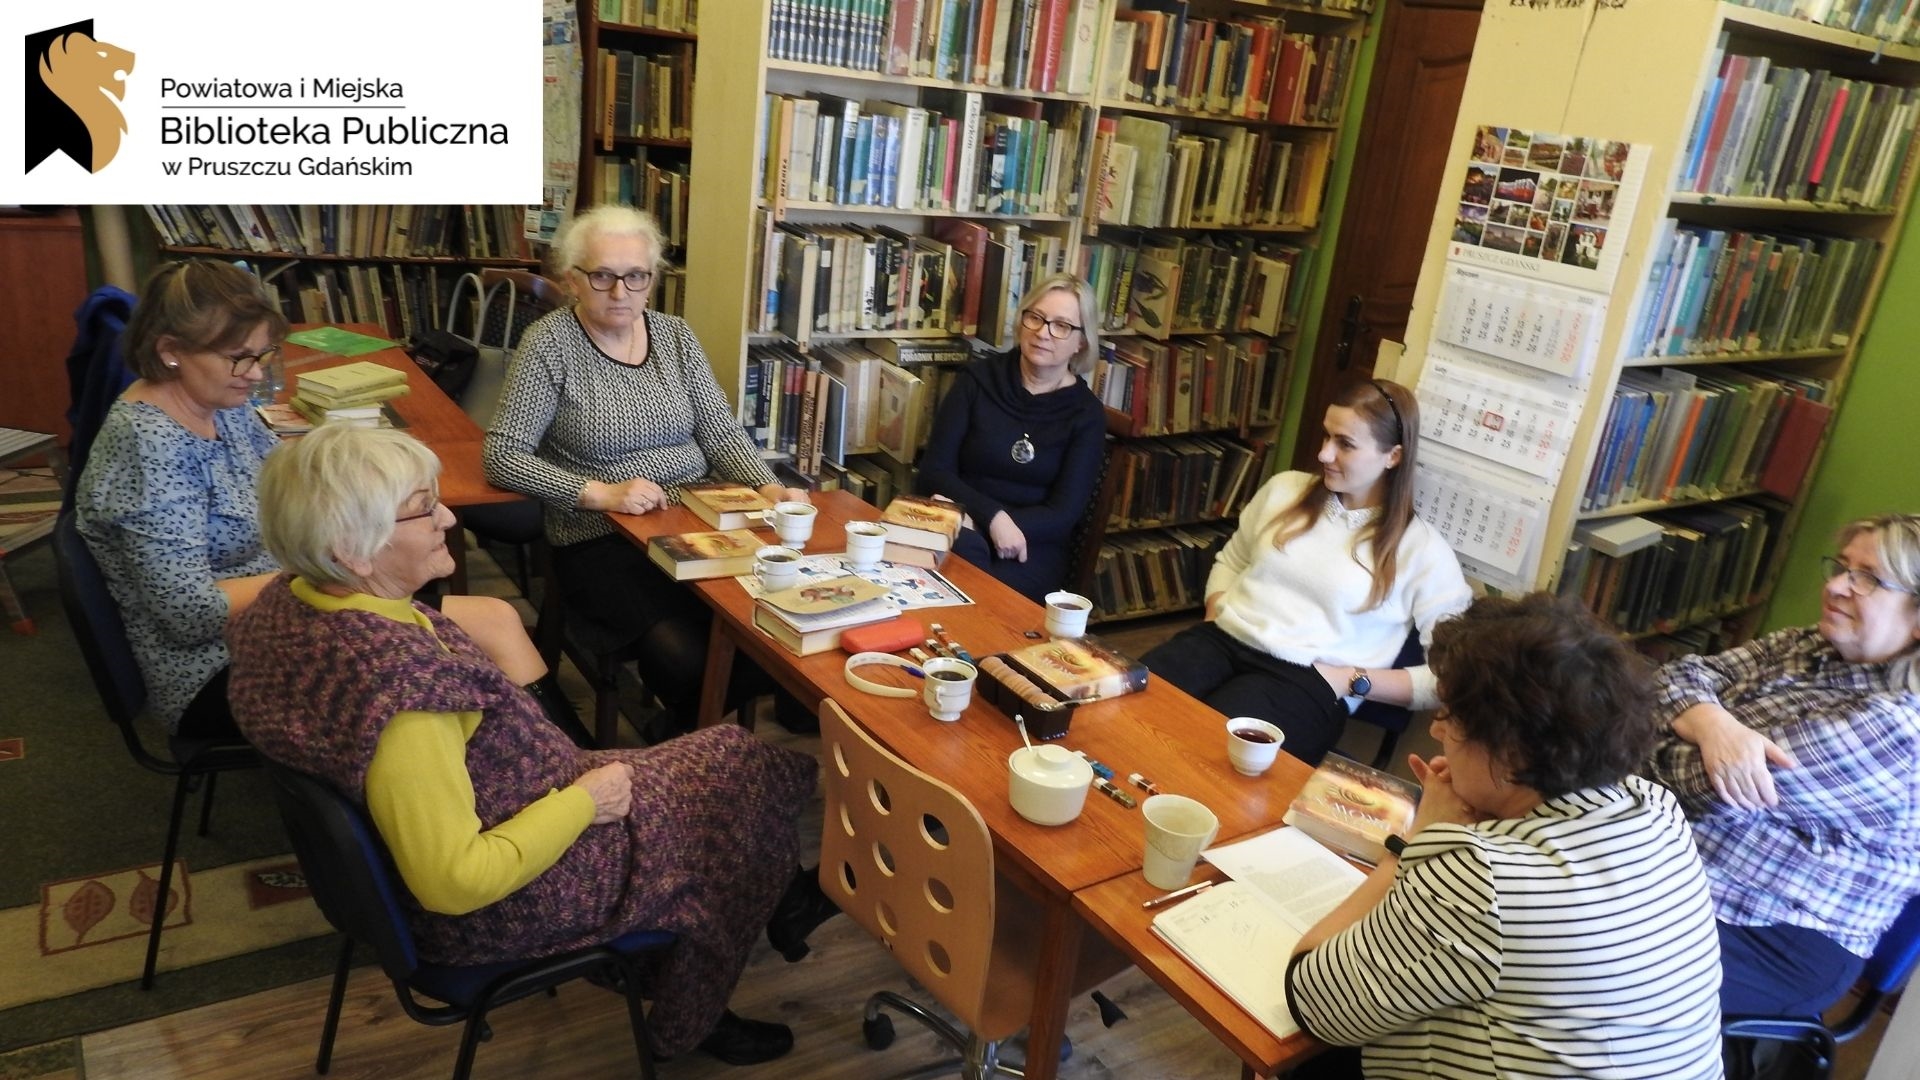 Sześć osób siedzi przy stolew pomieszczeniu z książkami. Logotyp oraz napis Powiatowa i Miejska Biblioteka Publiczna w Pruszczu Gdańskim.